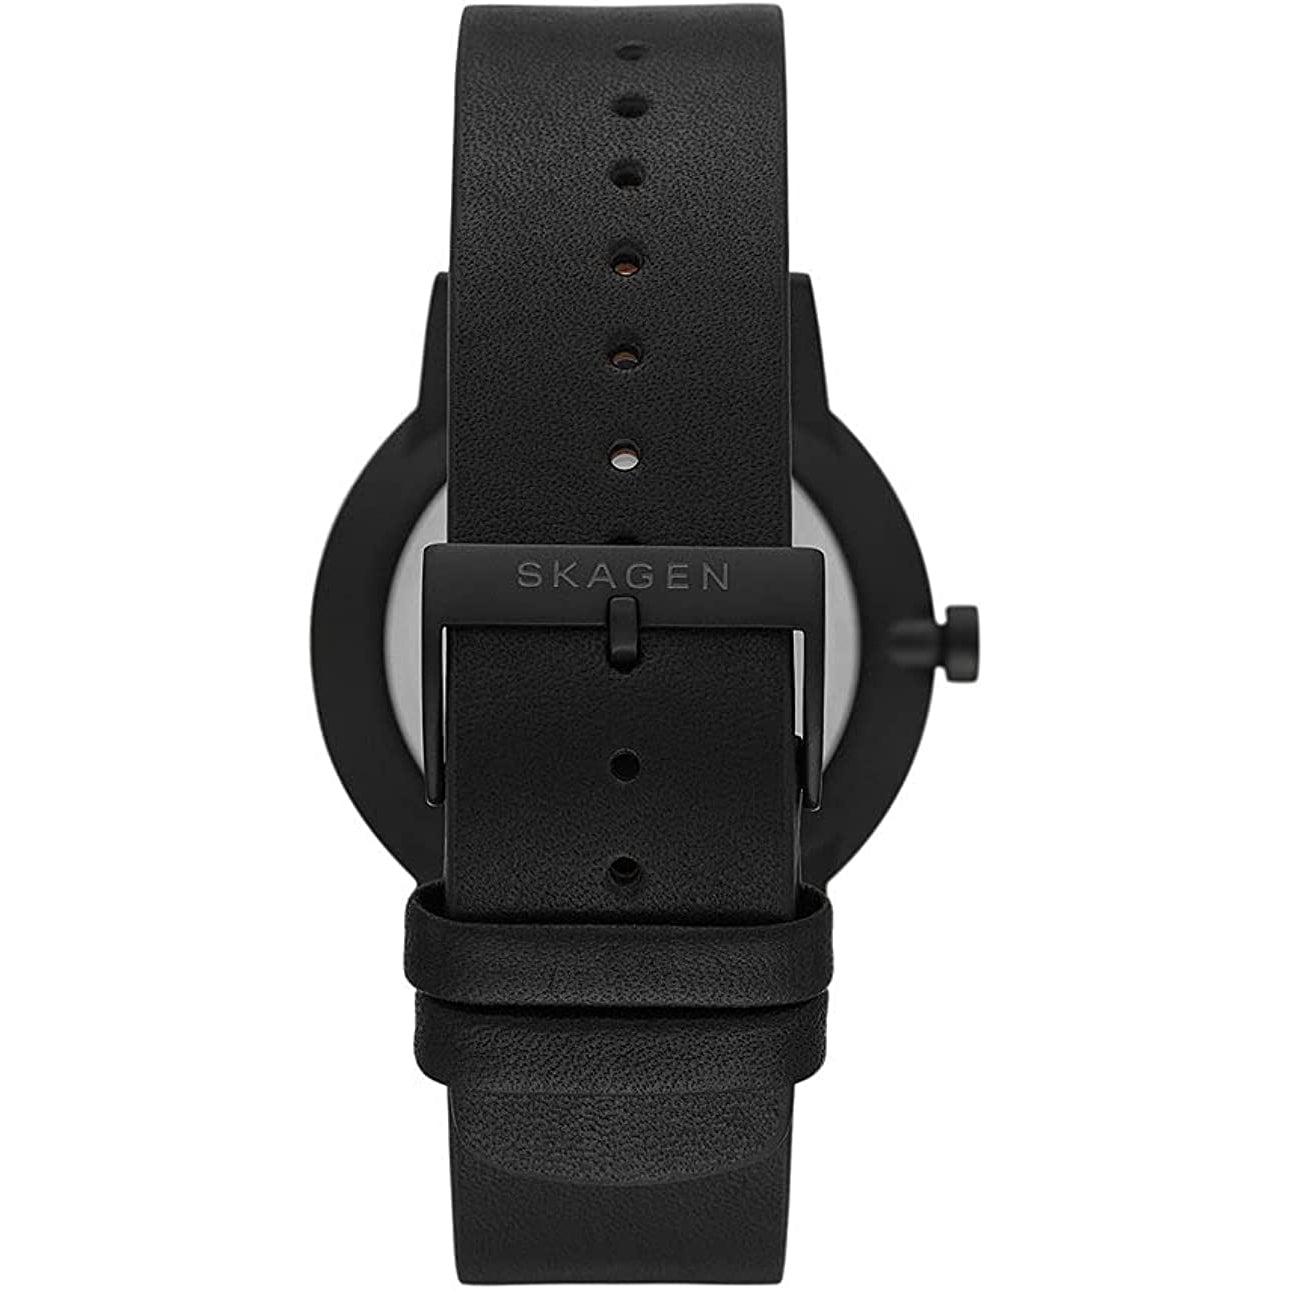 Skagen Men's SKW6740 Henriksen Leather Strap Watch, Black